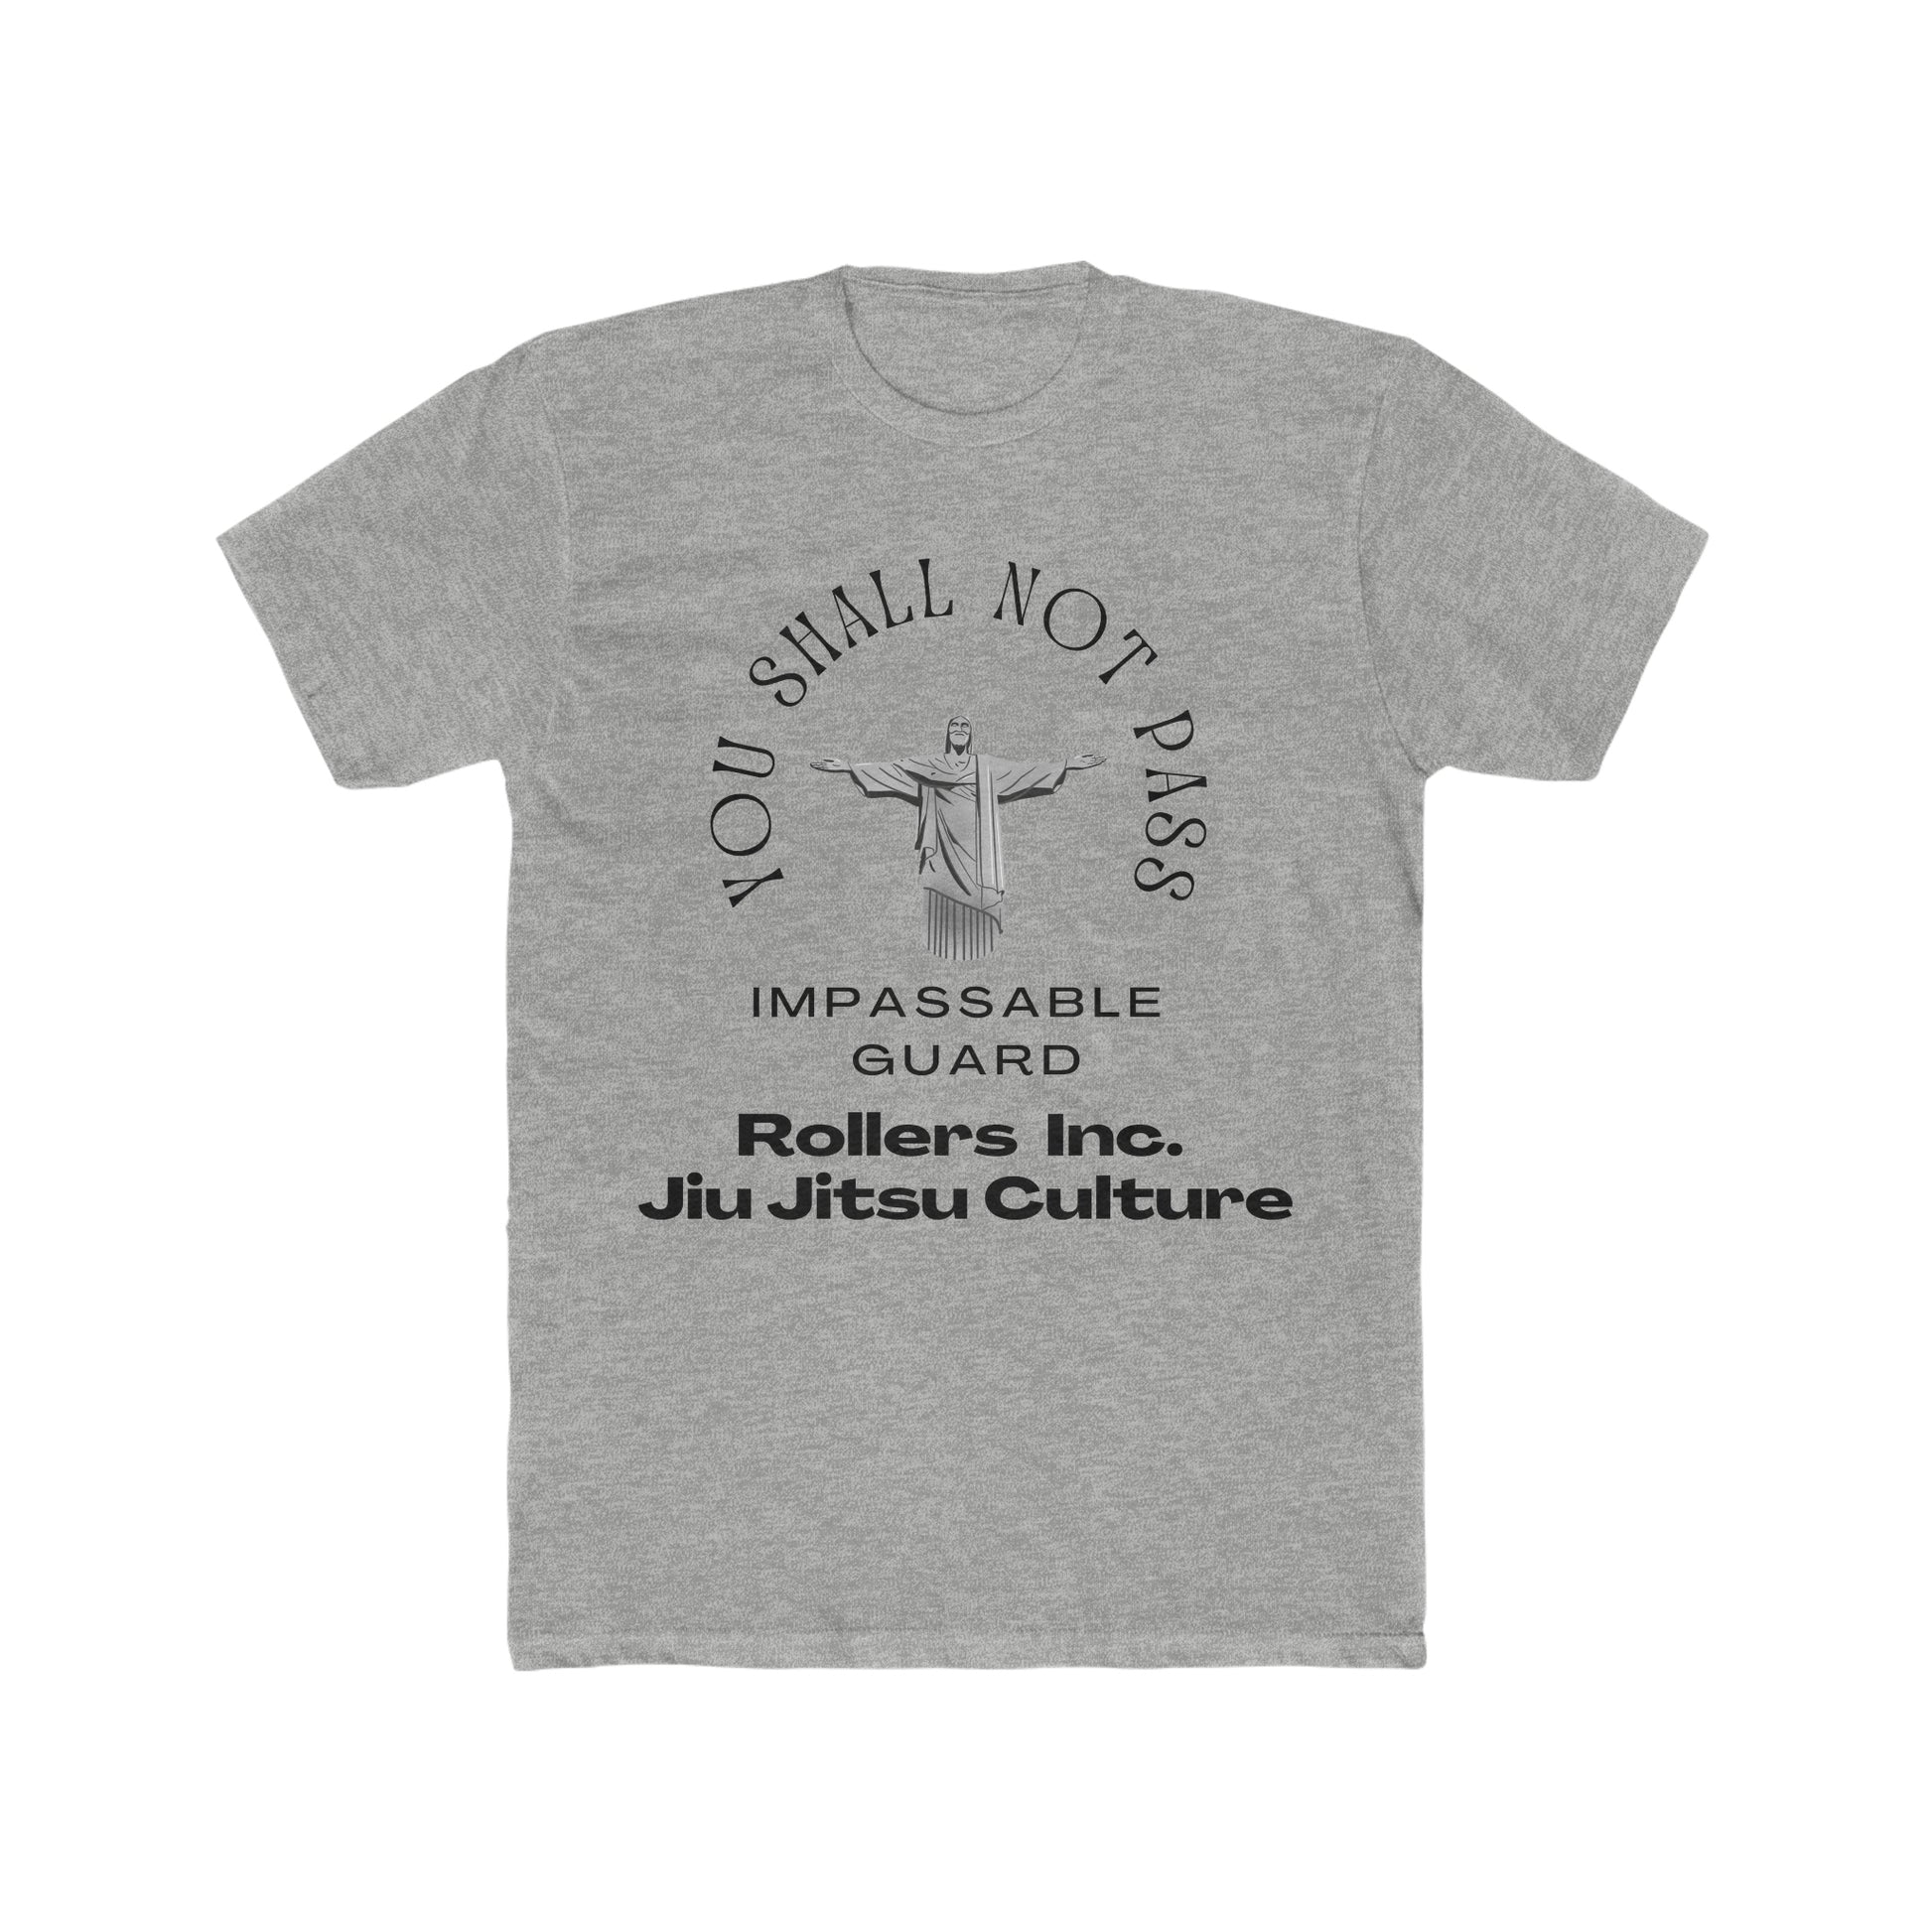 Jiu Jitsu shirts